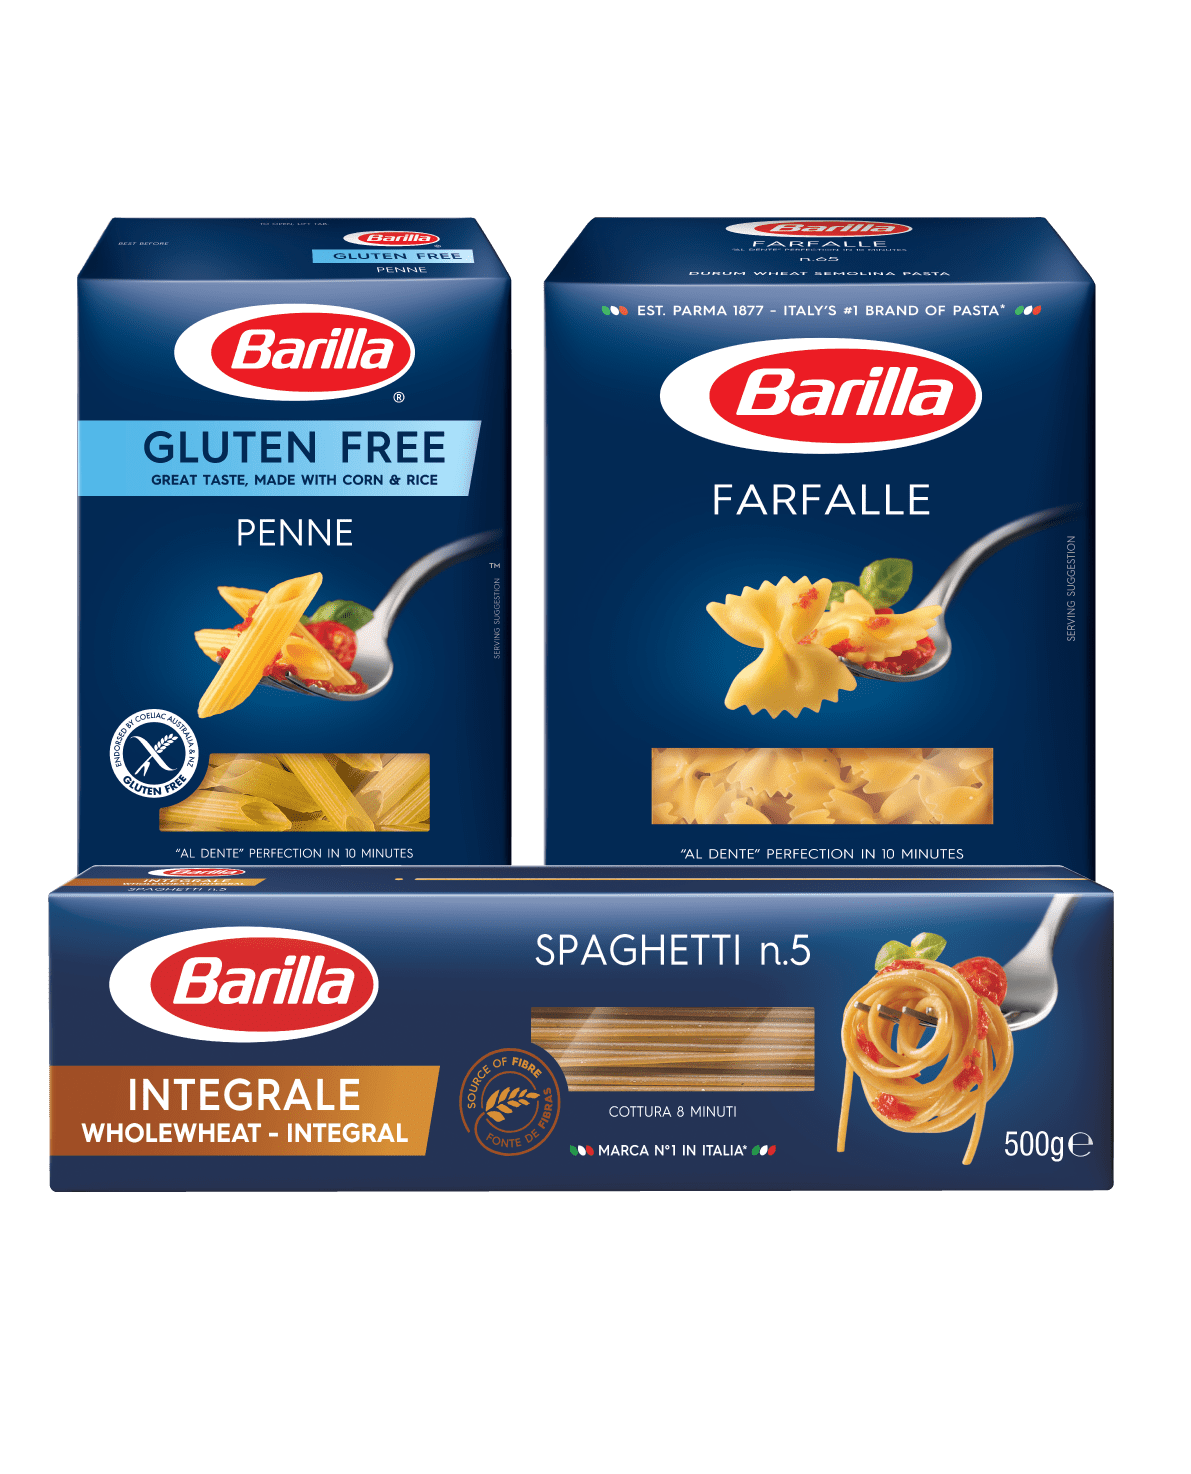 Barilla packs